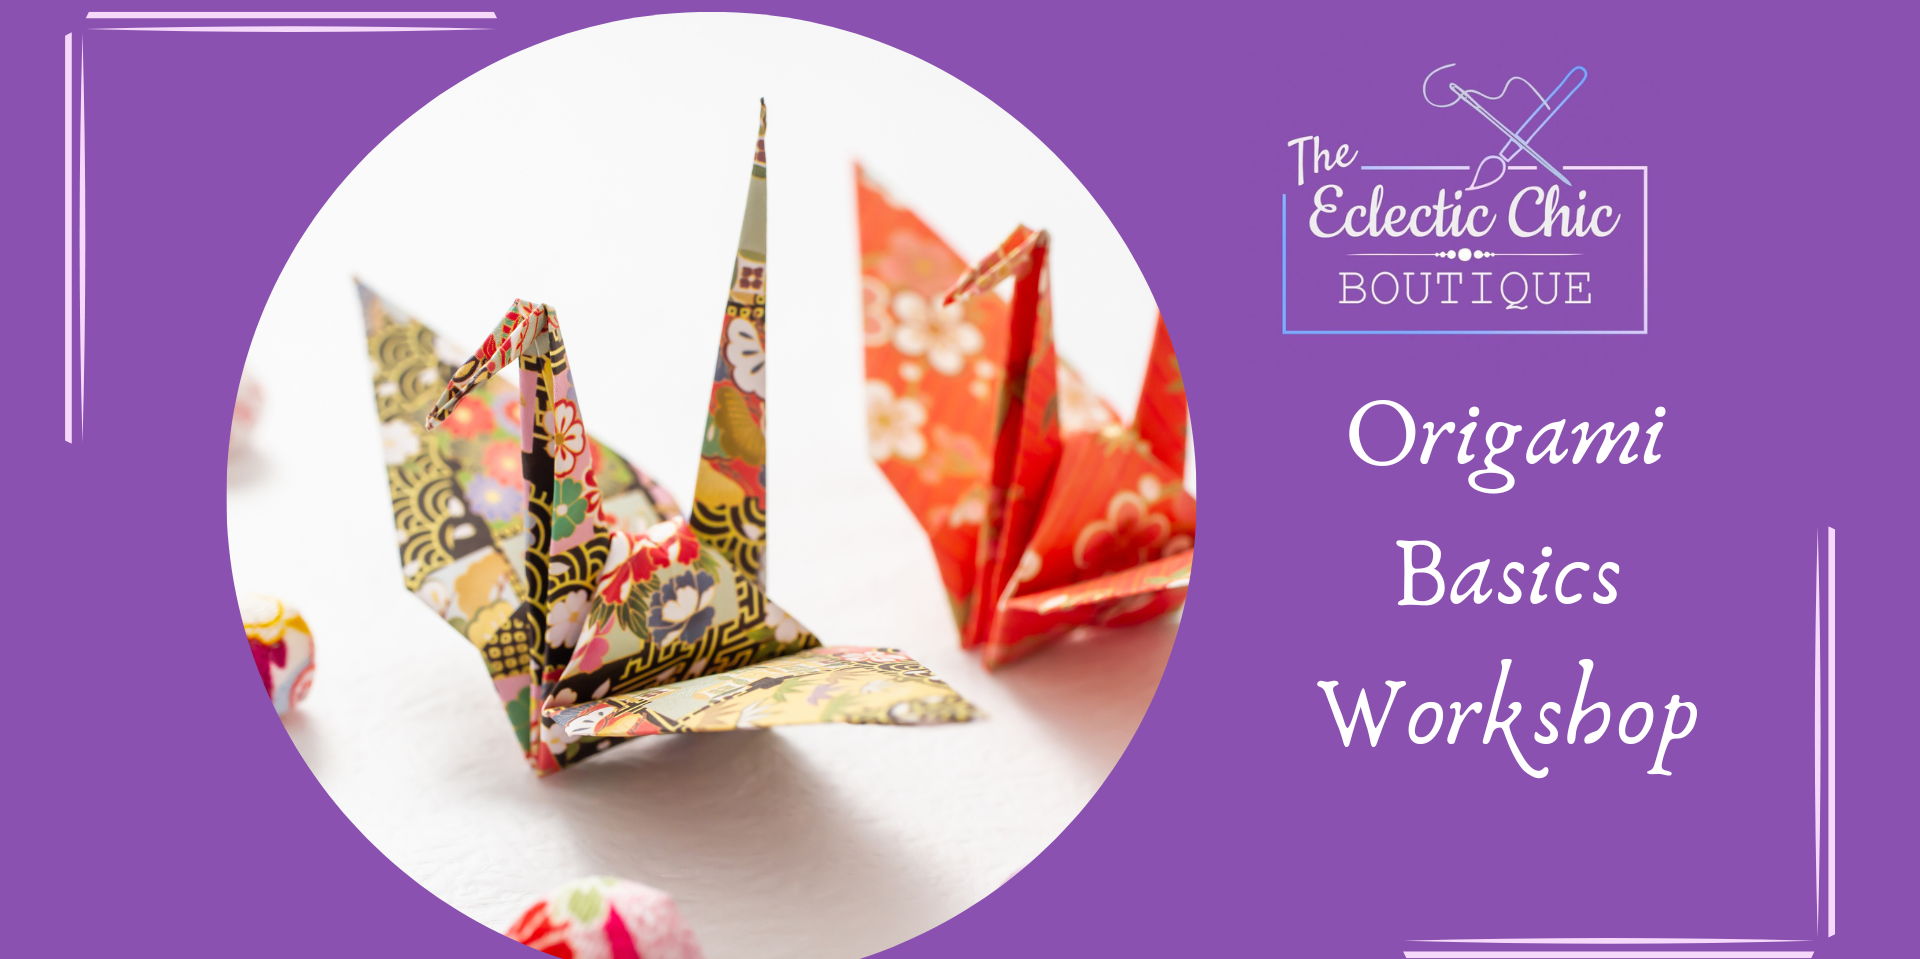 Origami Basics Workshop promotional image